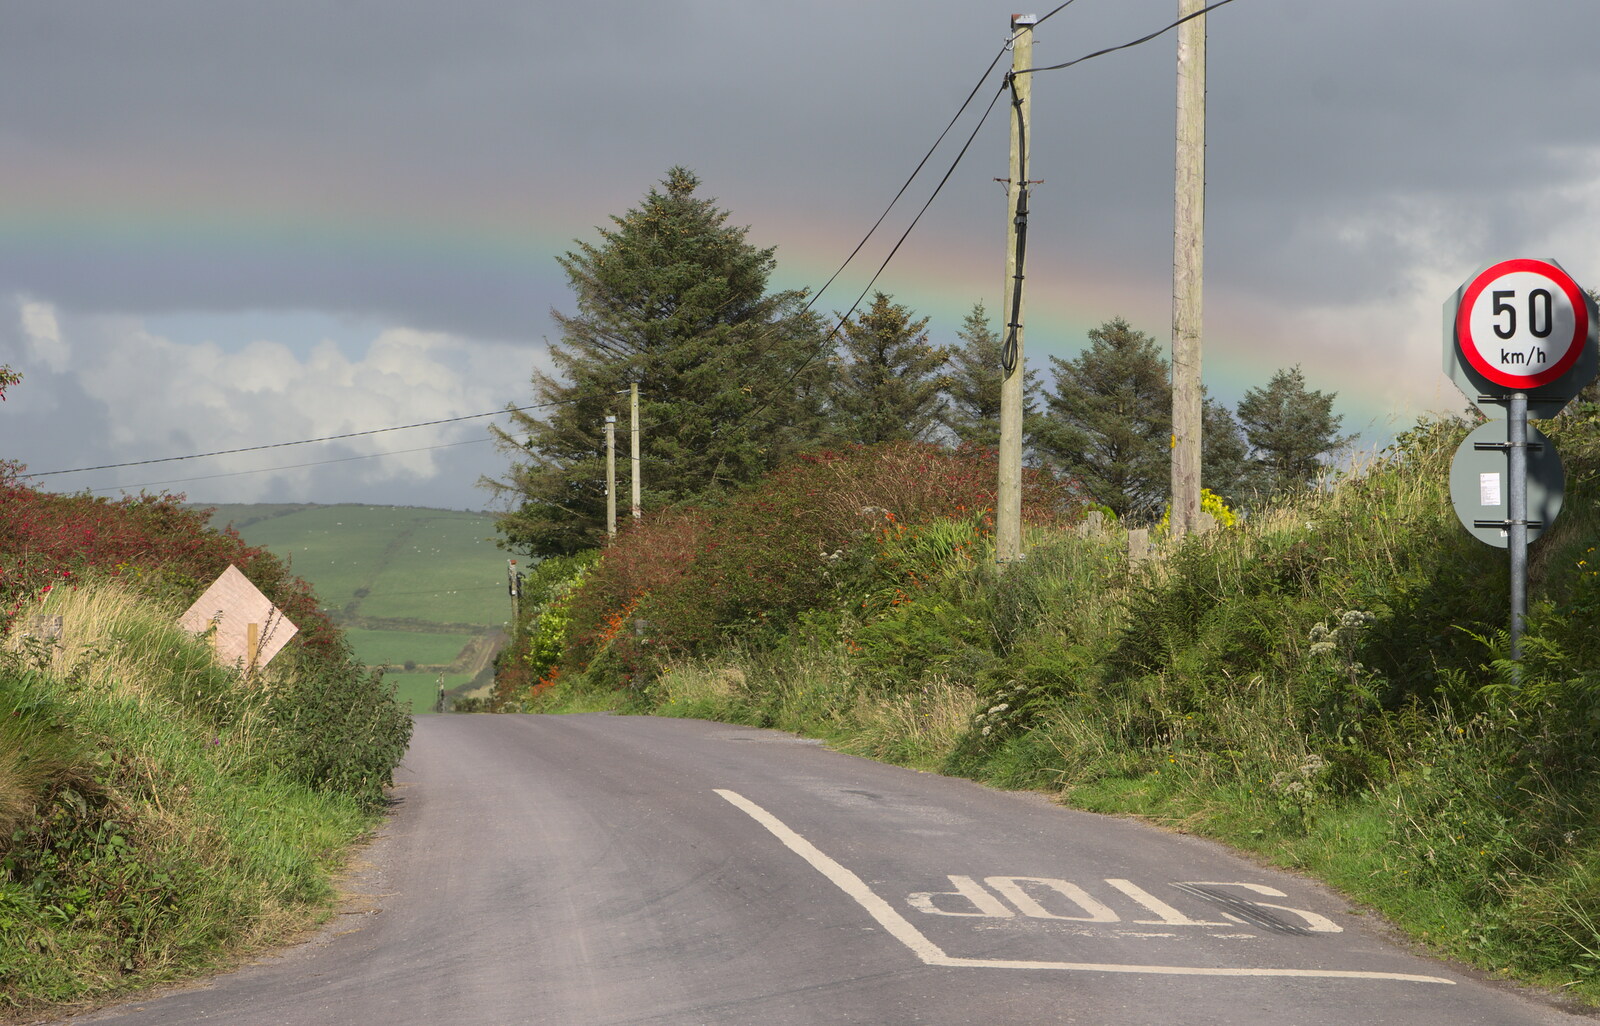 There's a rainbow over the road from The Annascaul 10k Run, Abha na Scáil, Kerry, Ireland - 5th August 2017